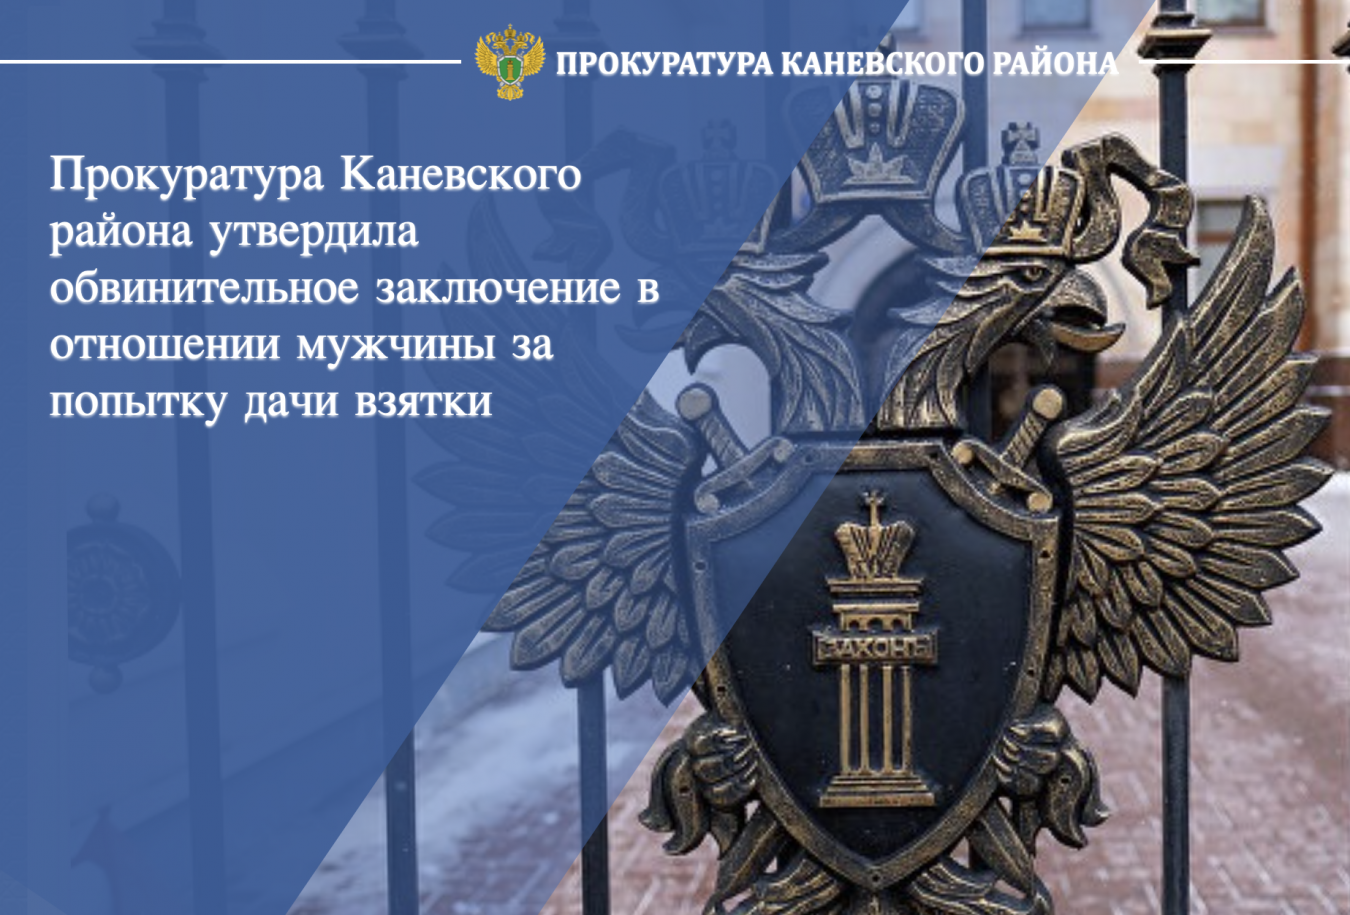 Прокуратура Каневского района утвердила обвинительное заключение в отношении мужчины за попытку дачи взятки 